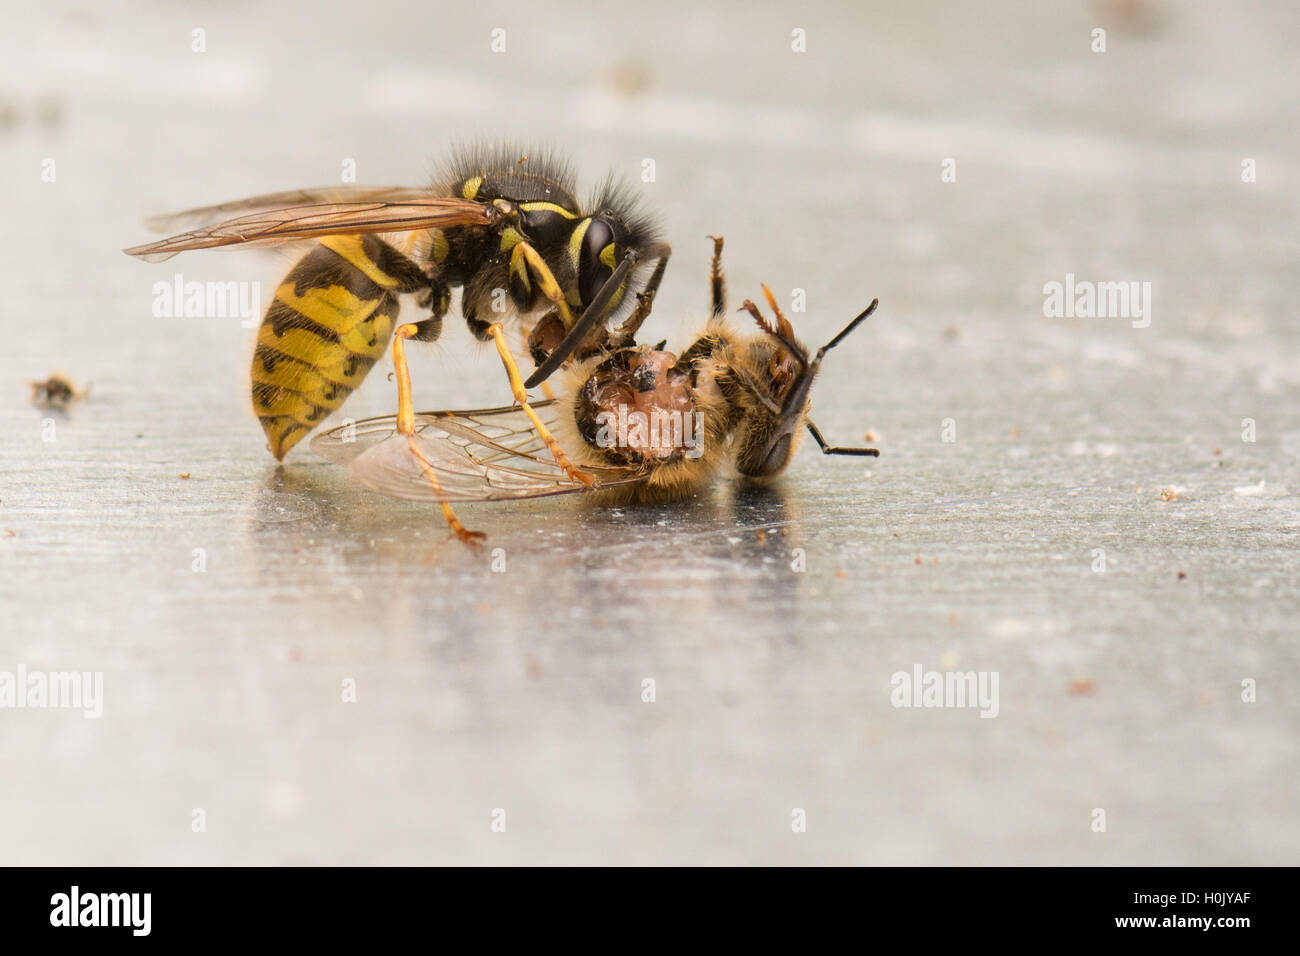 Guêpe (Vespula) manger une abeille qui est toujours vivant et en mouvement - Écosse, Royaume-Uni Banque D'Images